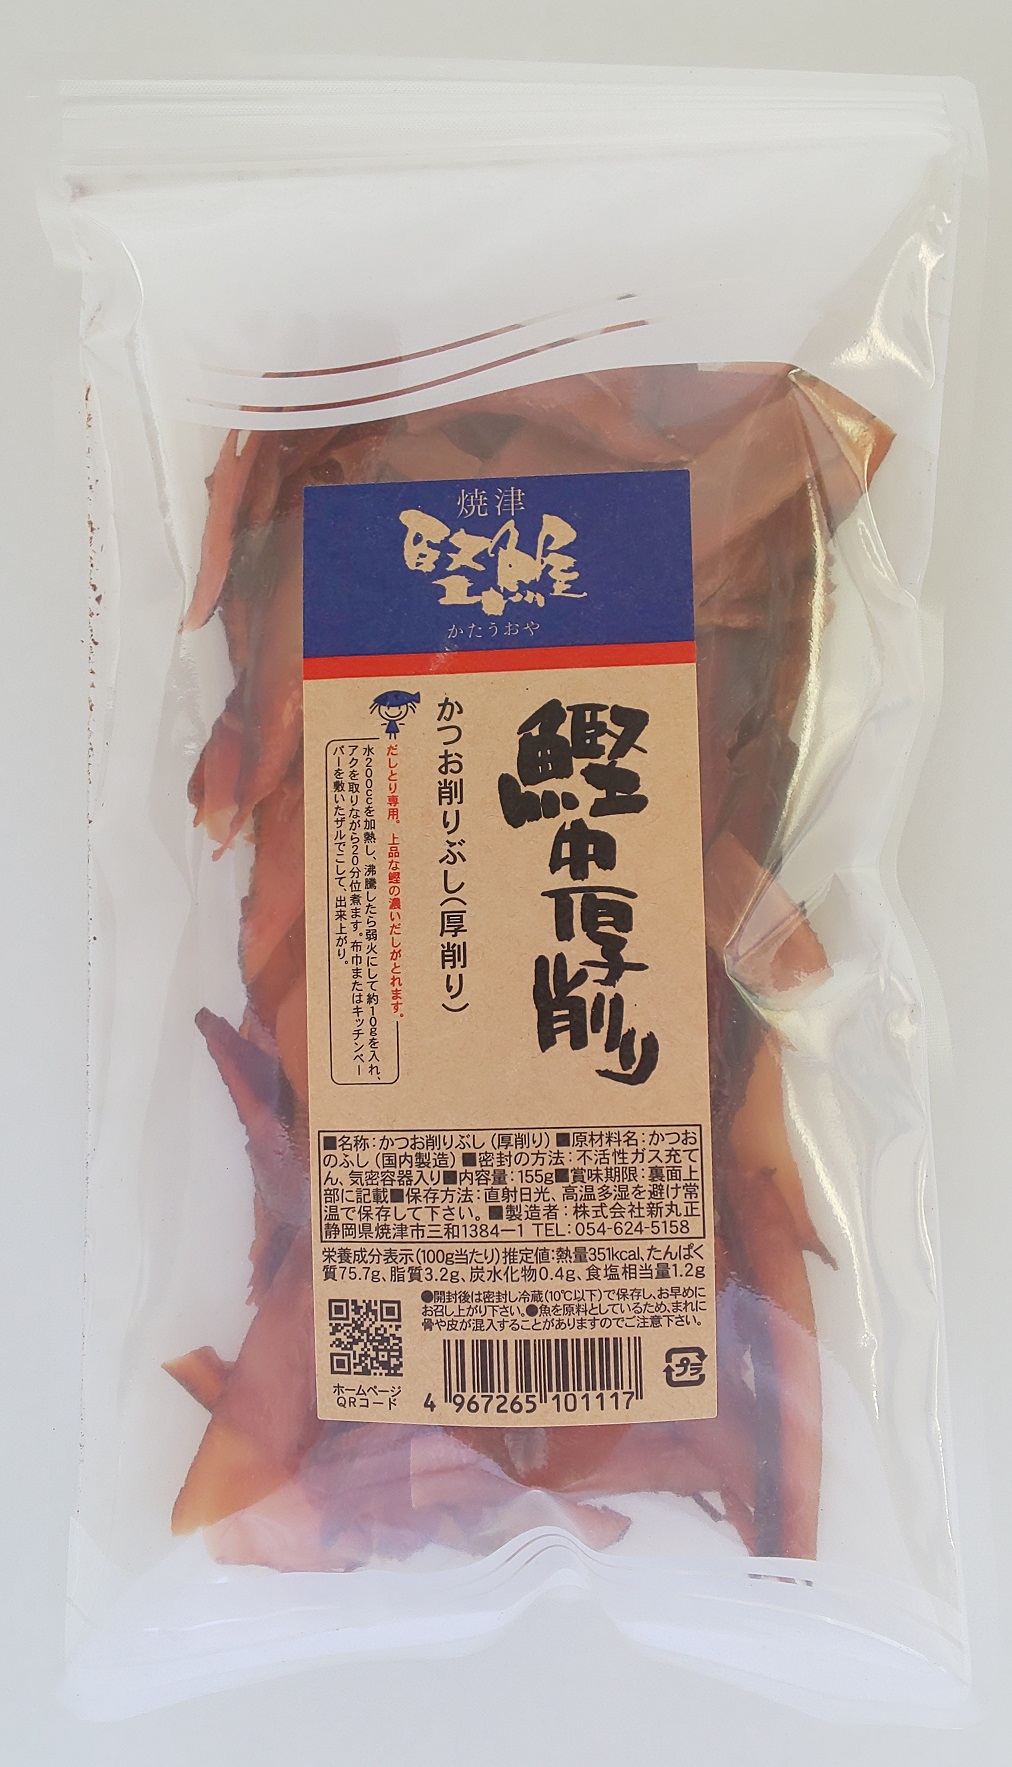 Ktsuo Cyuatsu Kezuri 155g (Dried bonito shavings)